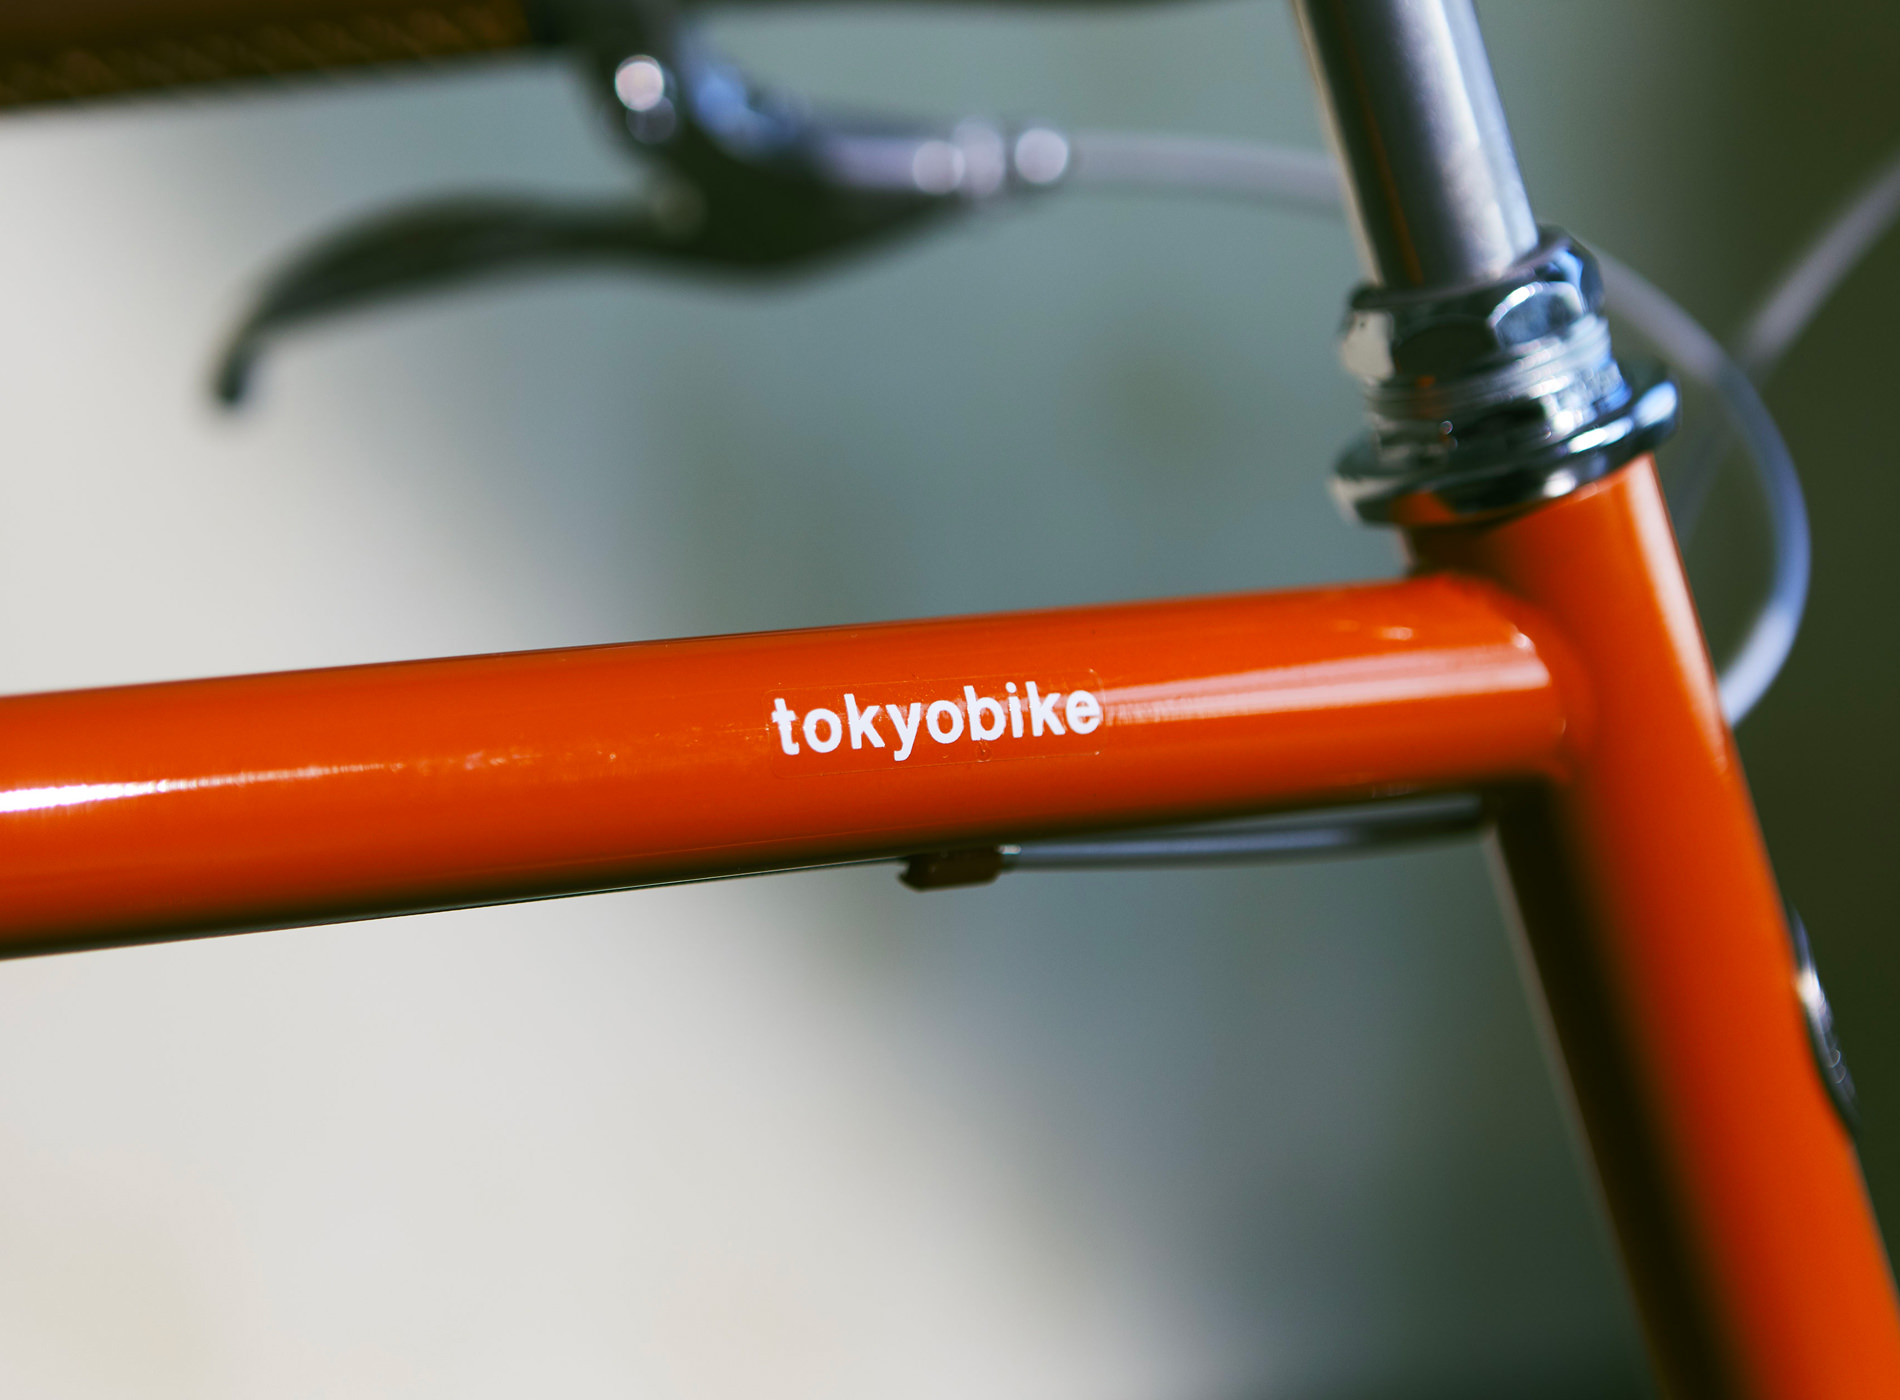 Tokyobike - Slow Tokyo "c'est autant le voyage que la destination" , Vélos urbains japonais